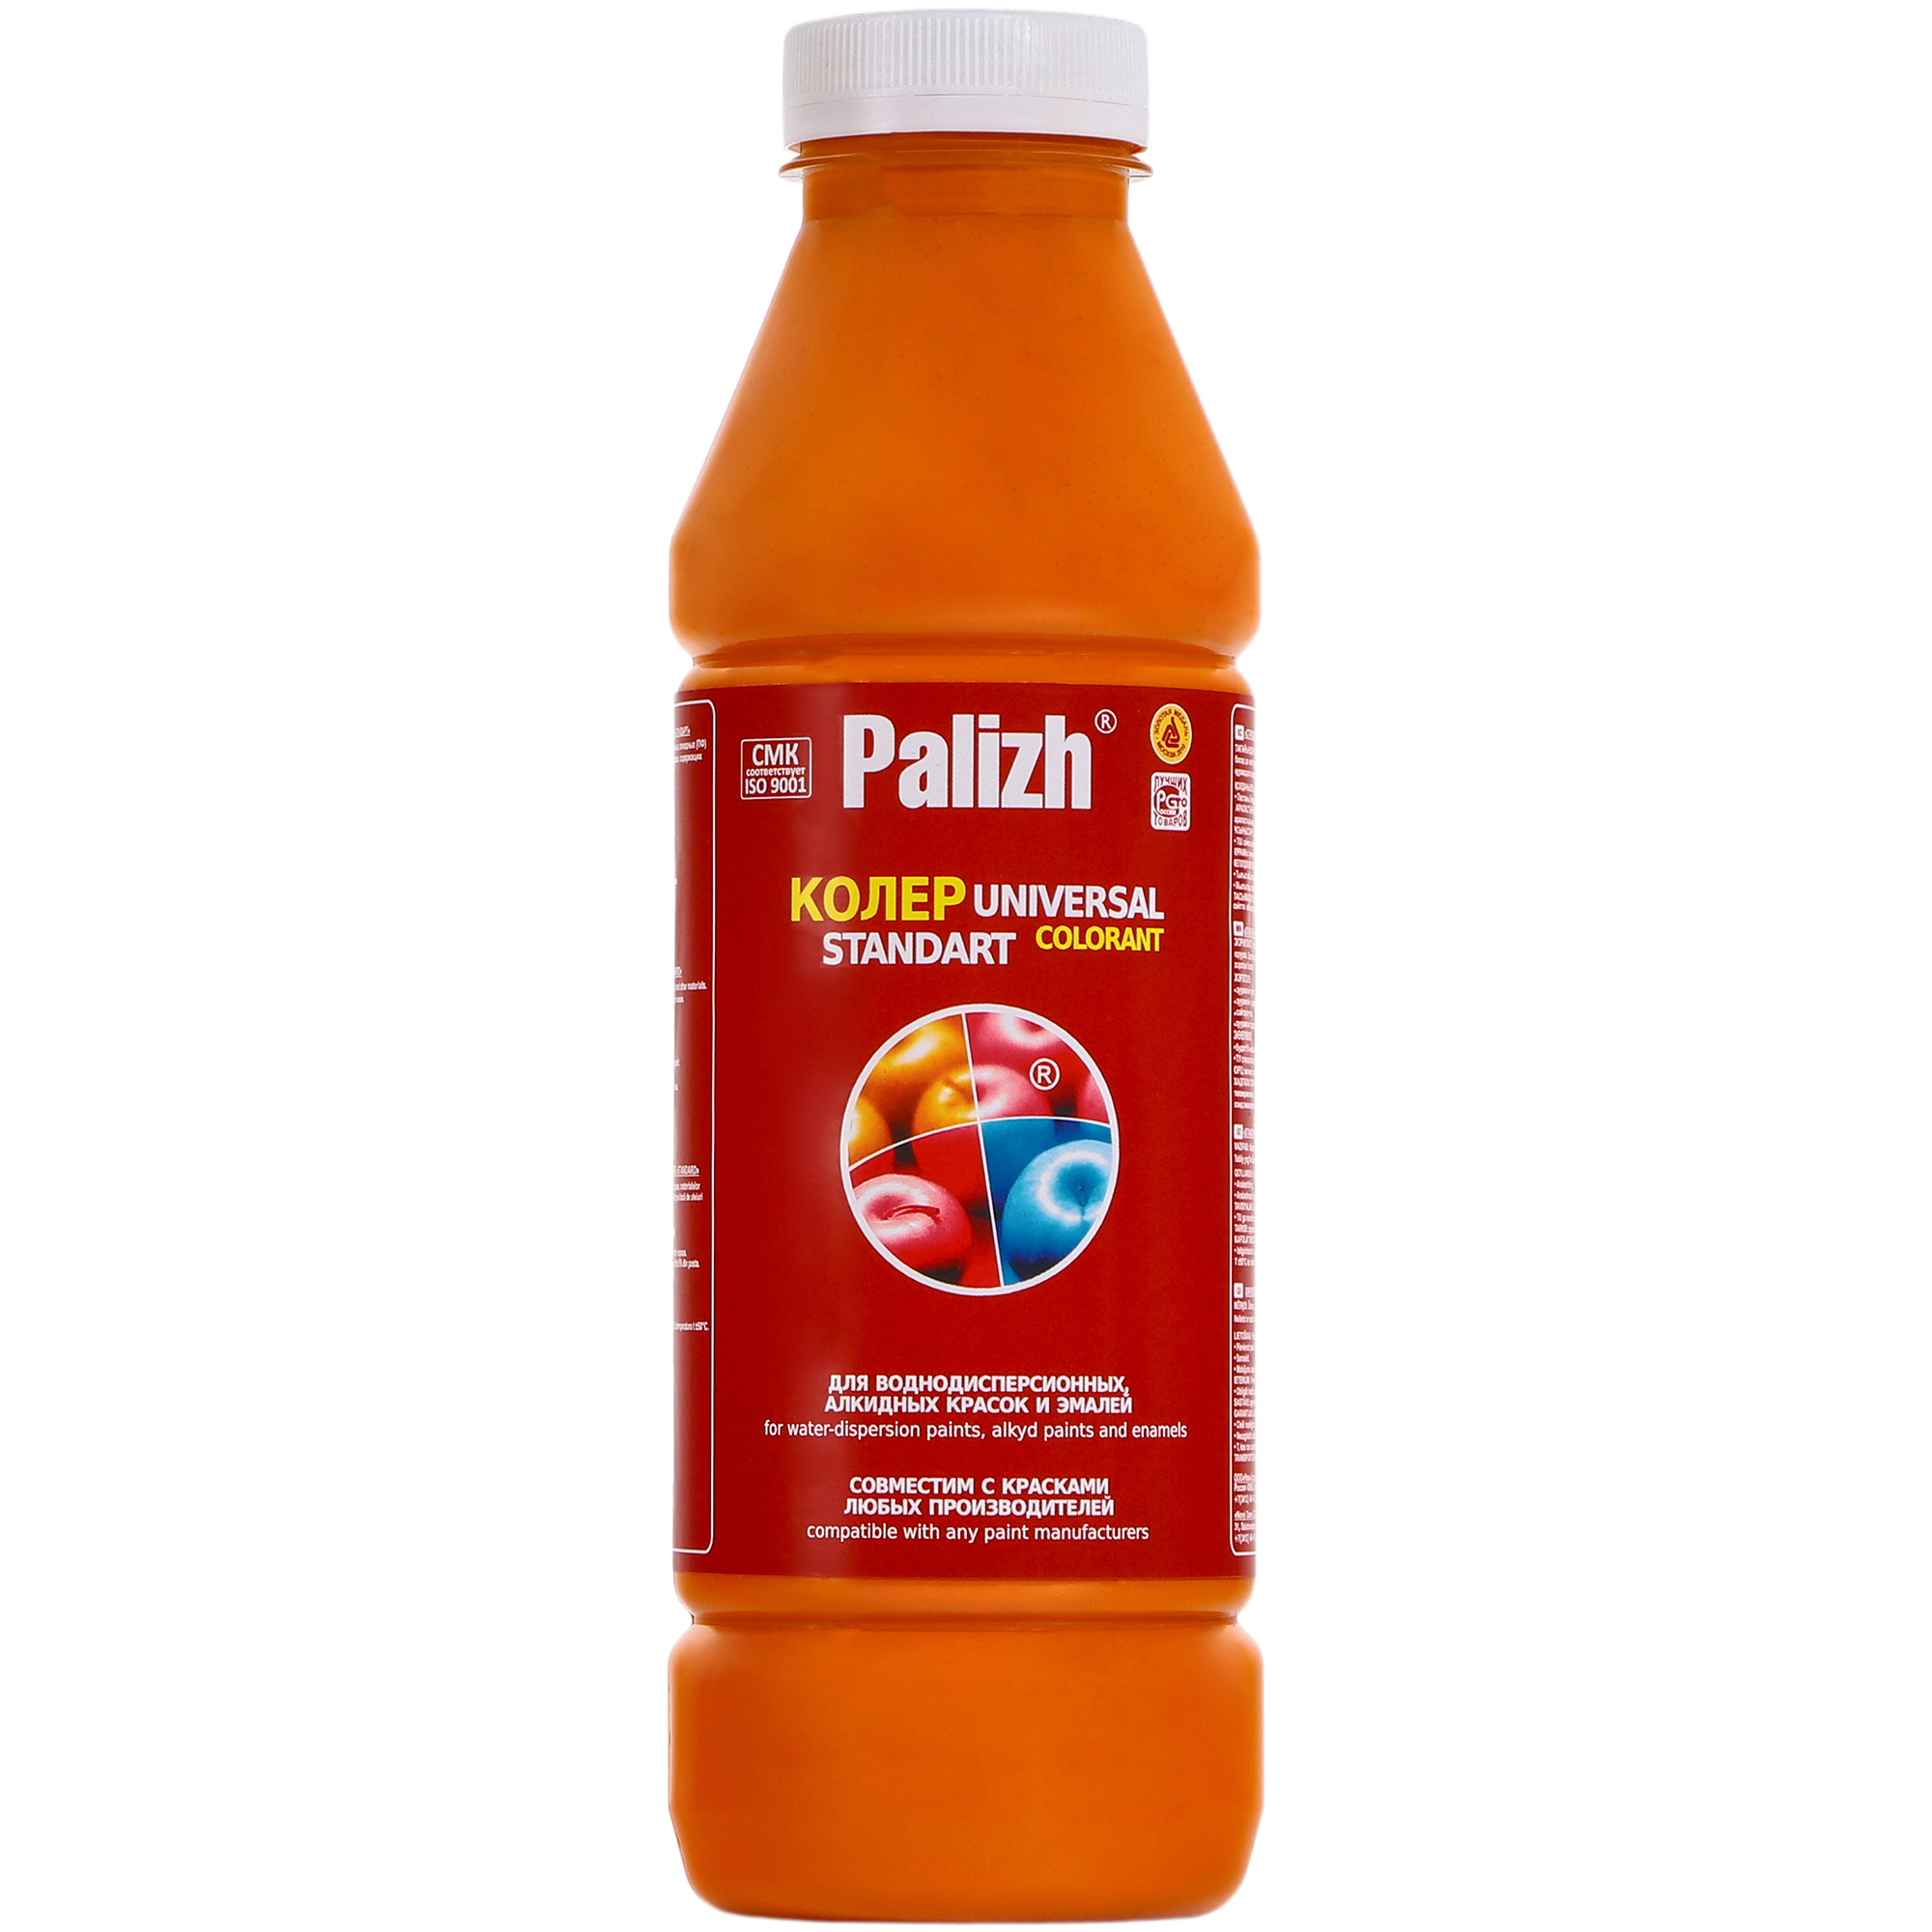 Паста универсальная колеровочная Palizh апельсин - 900 мл паста универсальная колеровочная palizh ирис 900 мл